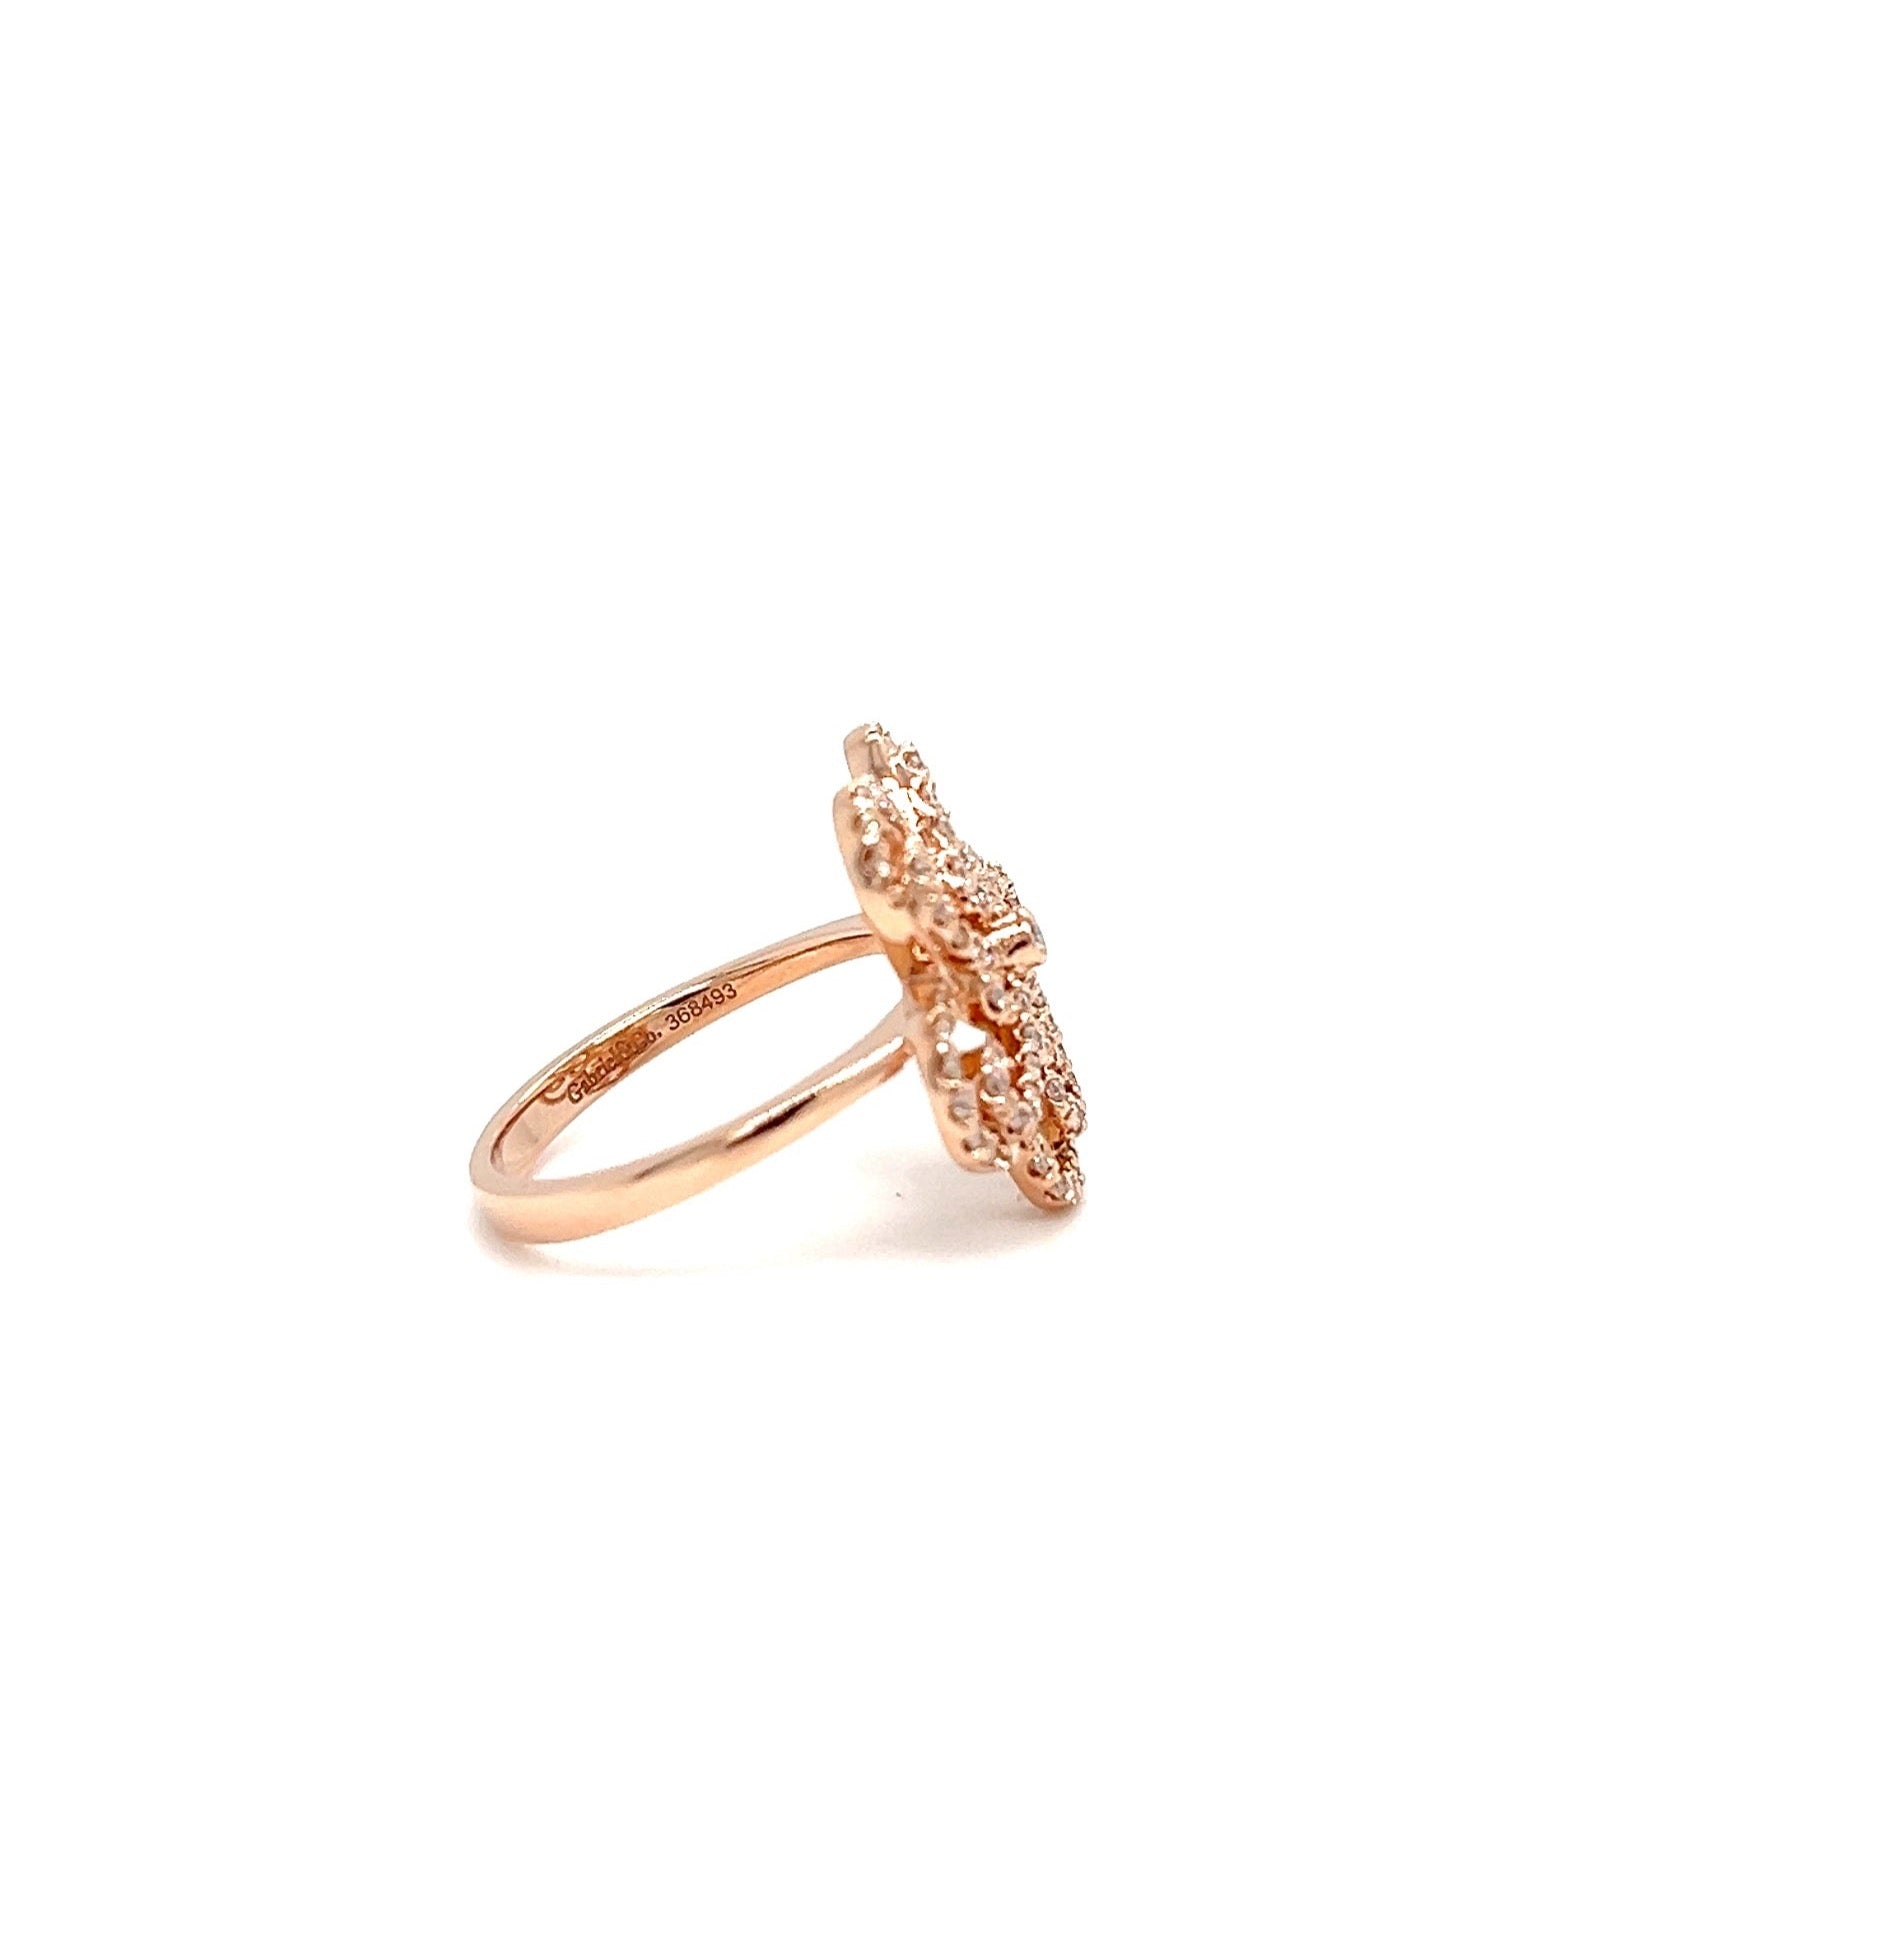 Rose Gold 14k Diamond Ring | I&I Diamonds in Coconut Creek, FL